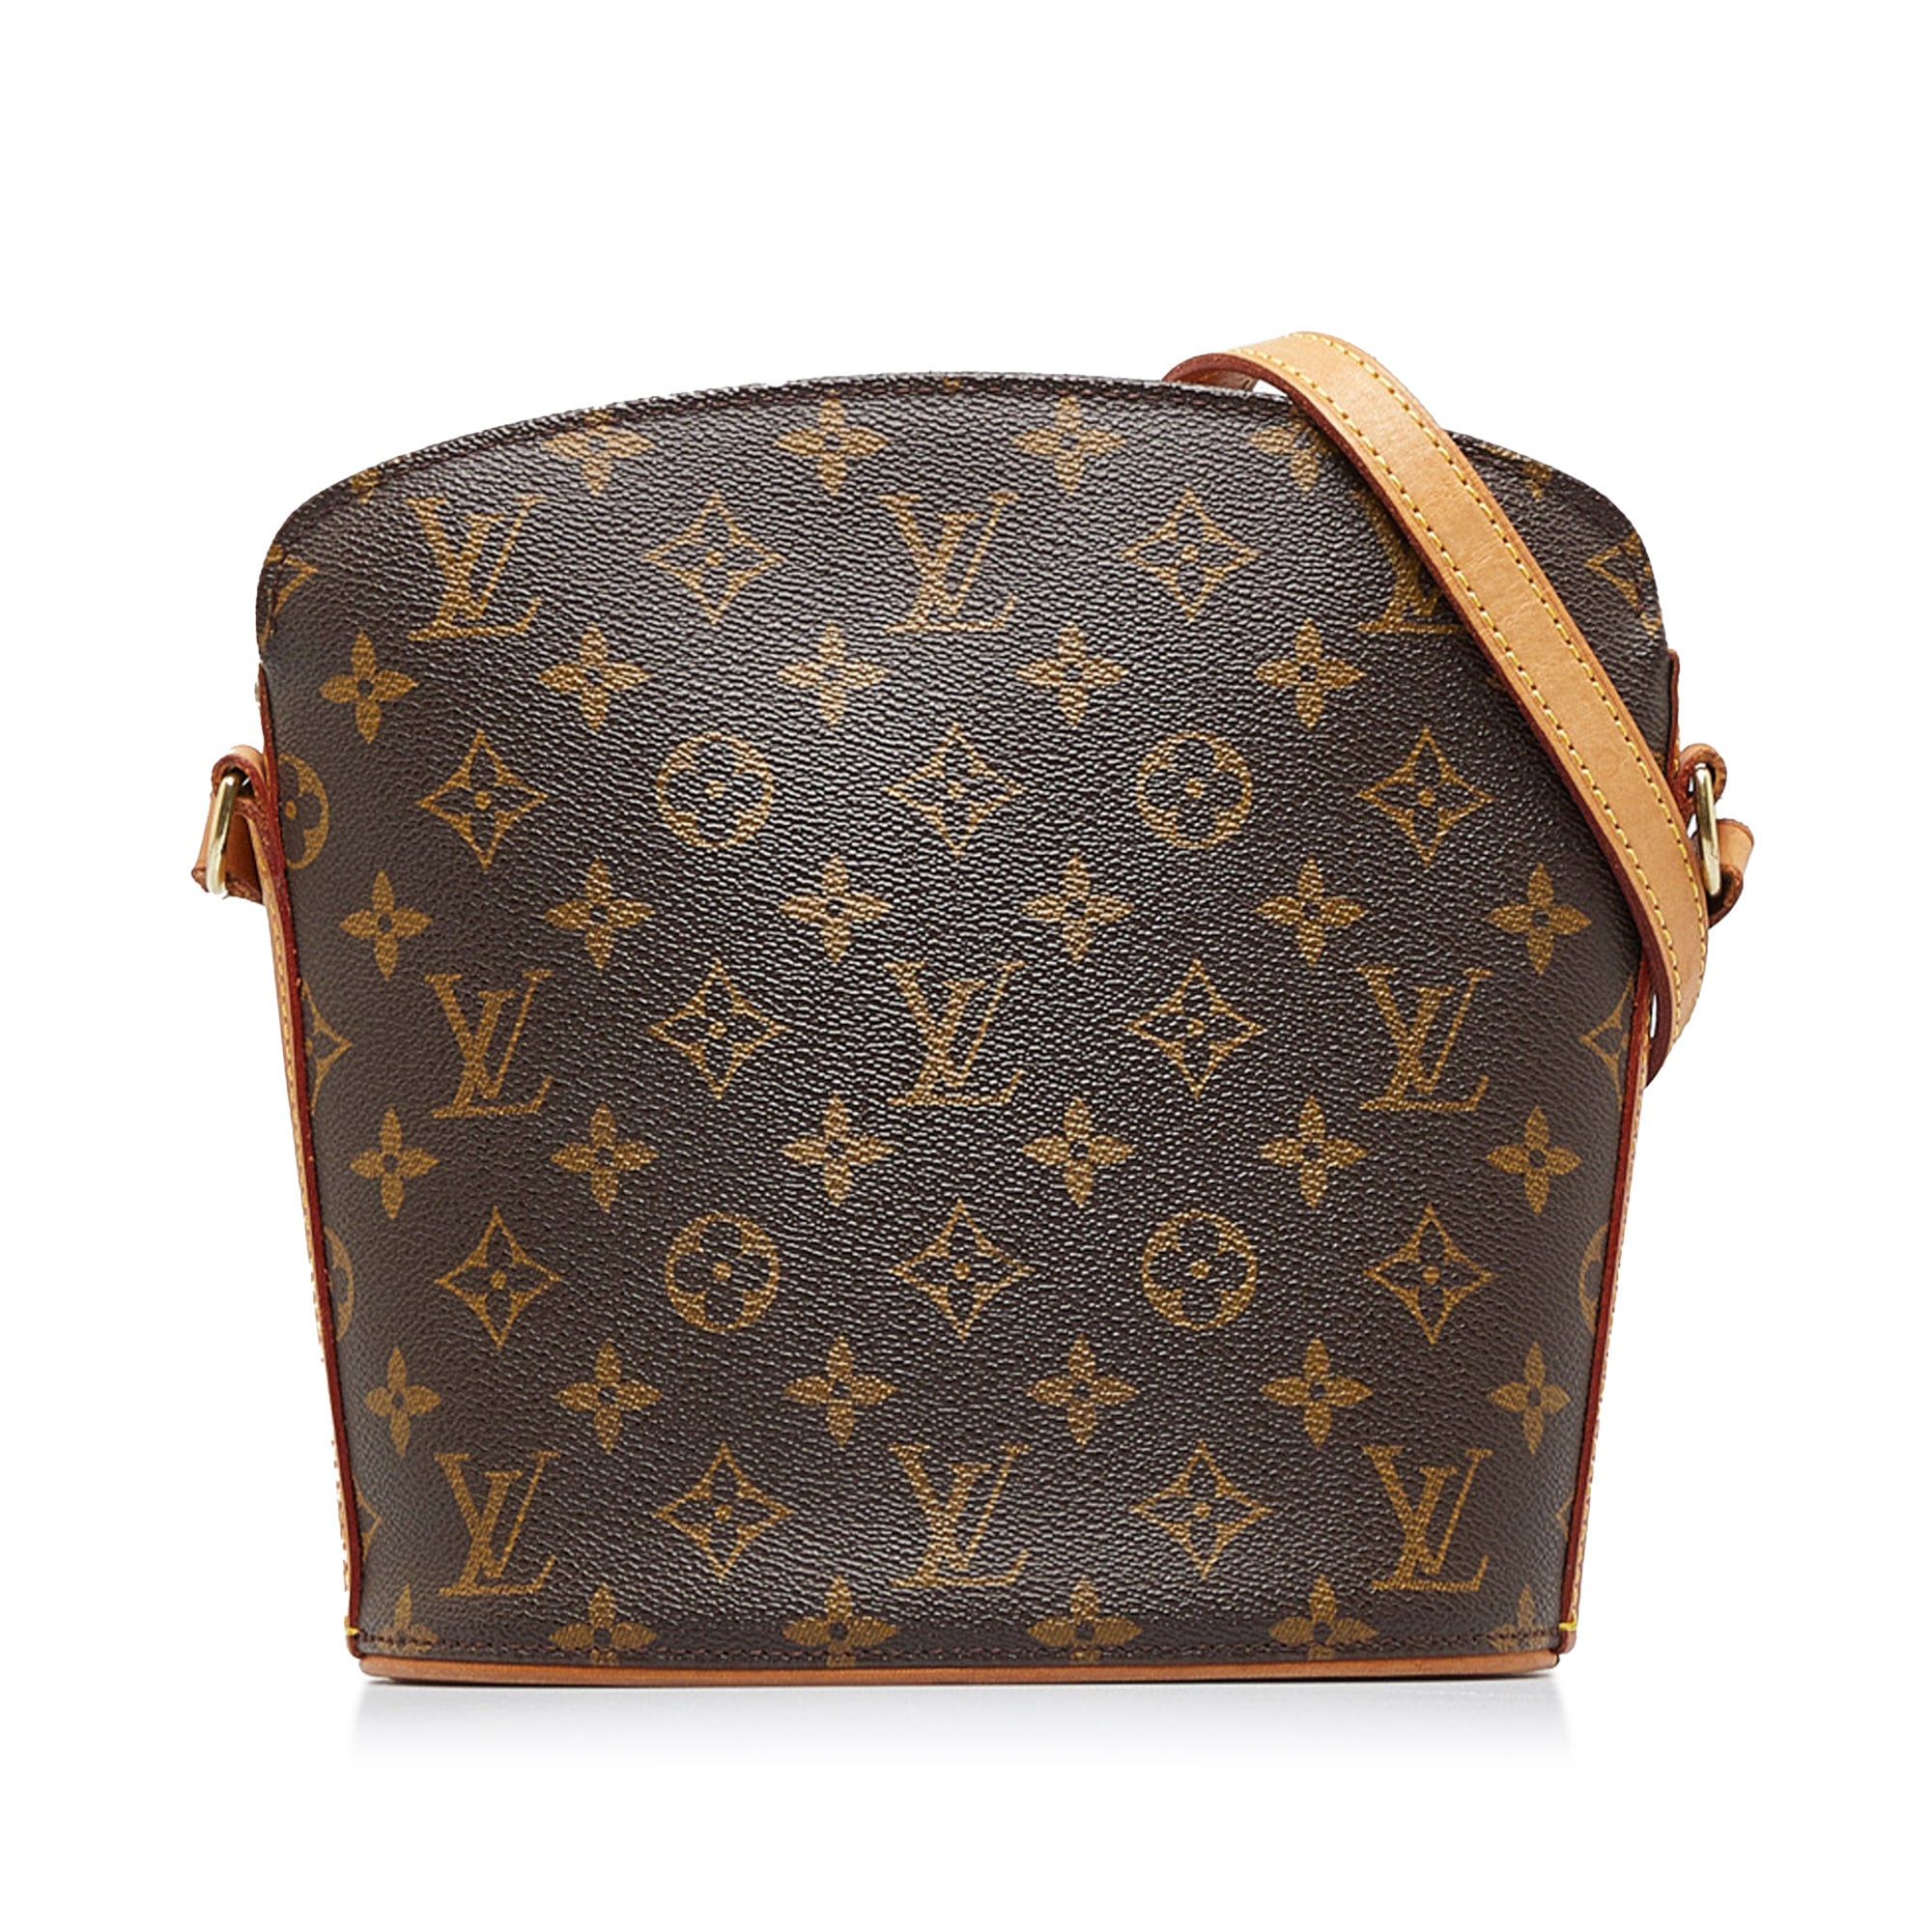 Vintage Louis Vuitton Monogram Accessories Pochette Bag VI1020